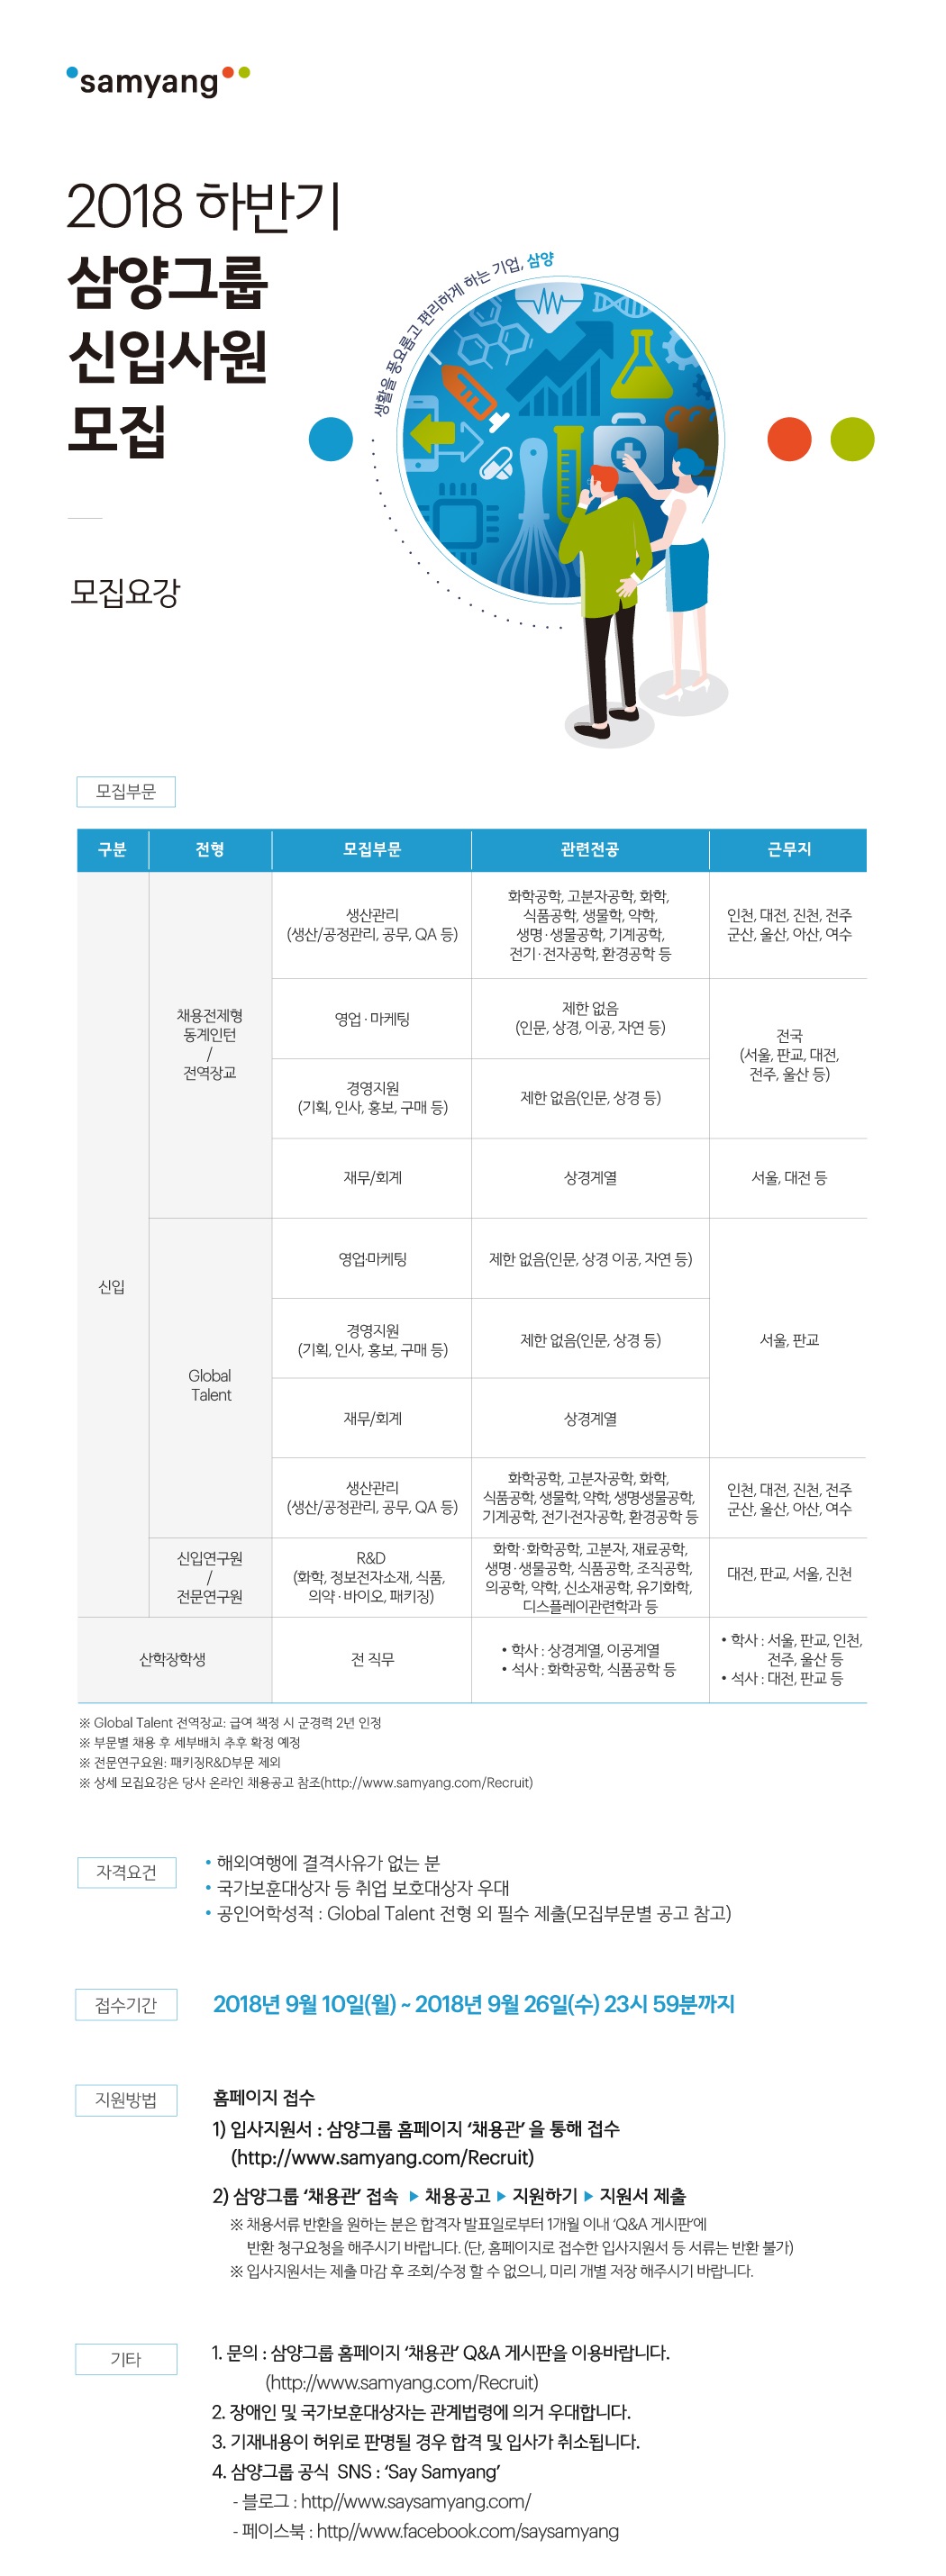 사본 -2018-삼양그룹-웹공고문-하반기-전체_최종.jpg